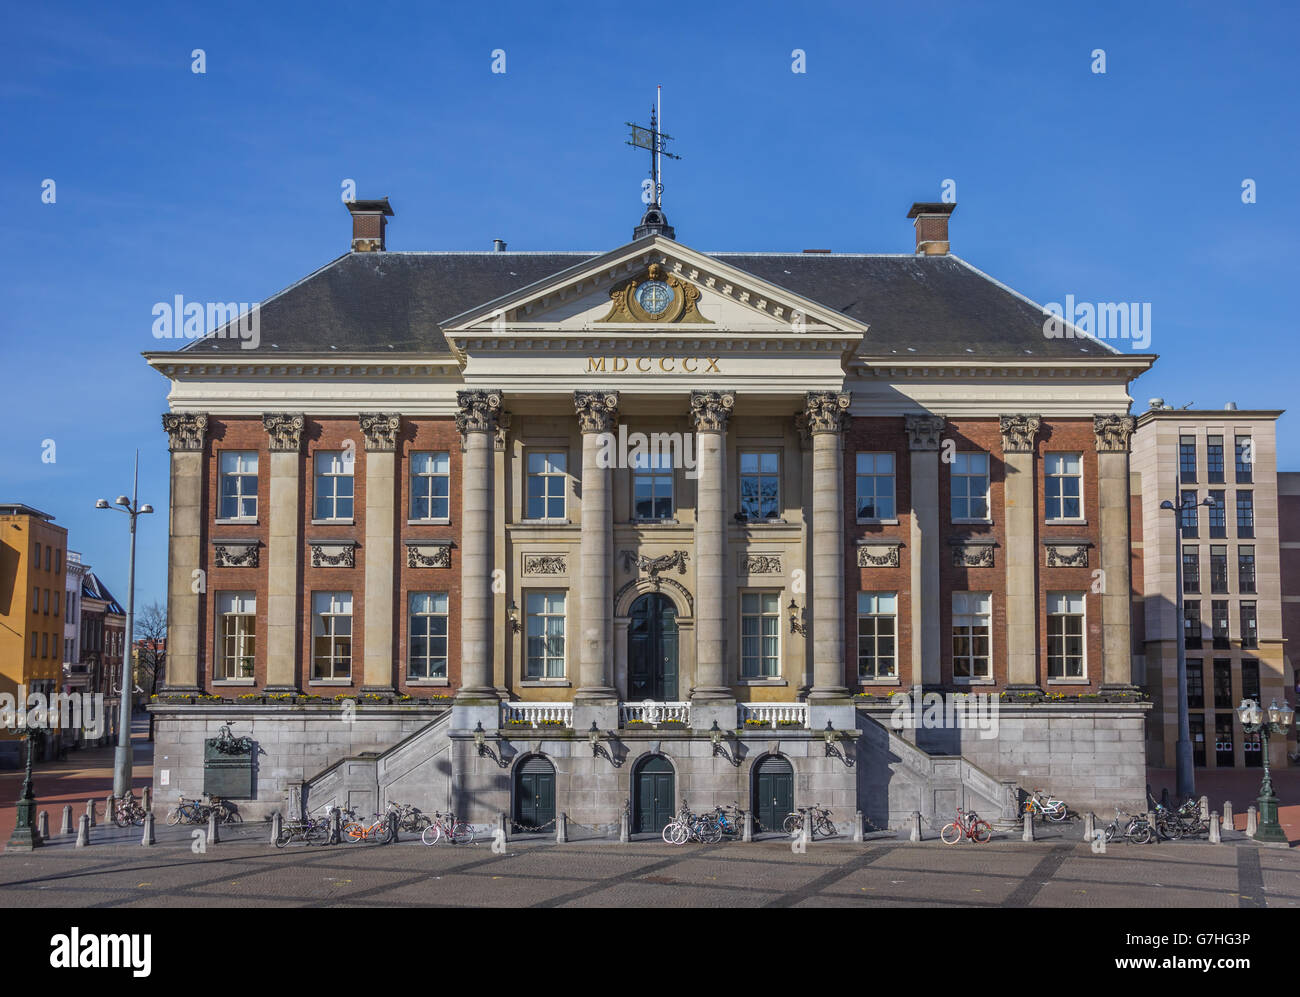 Hôtel de ville dans le centre de Groningen, Pays-Bas Banque D'Images